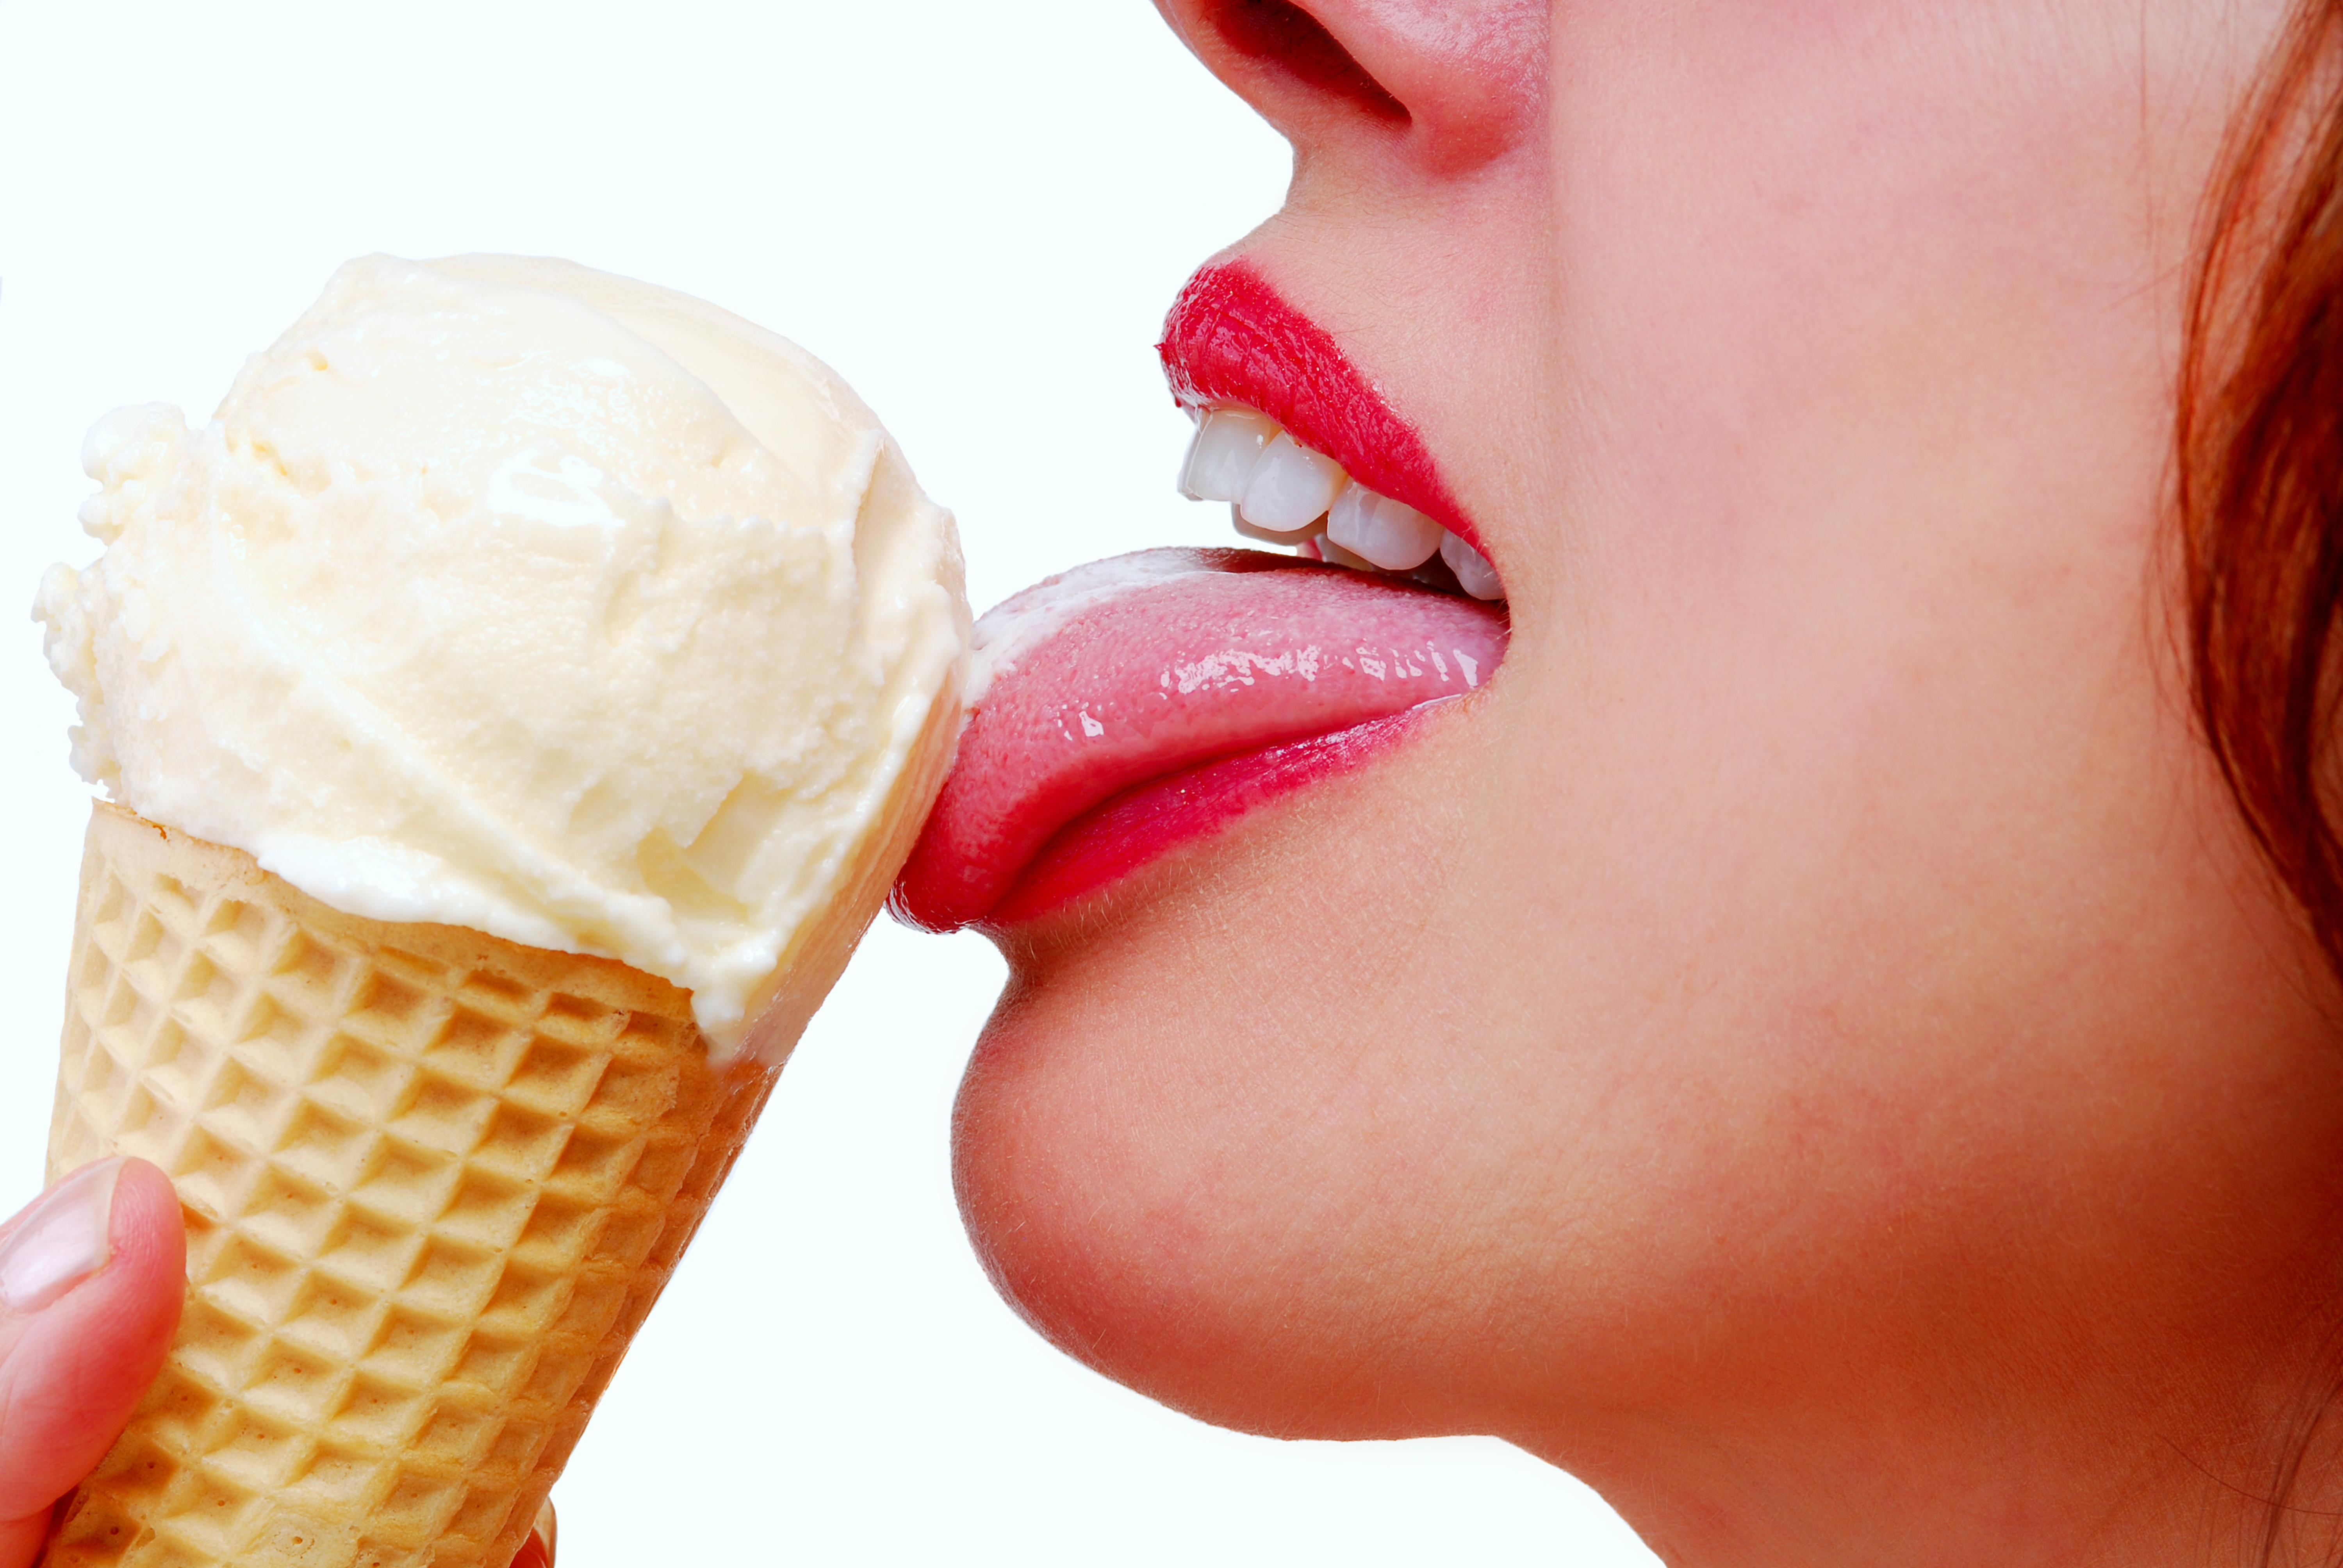 Девушка лижет губы. Девушка облизывает мороженое. Женщина ест мороженое. Девушка лижет мороженое. Кушать мороженое.